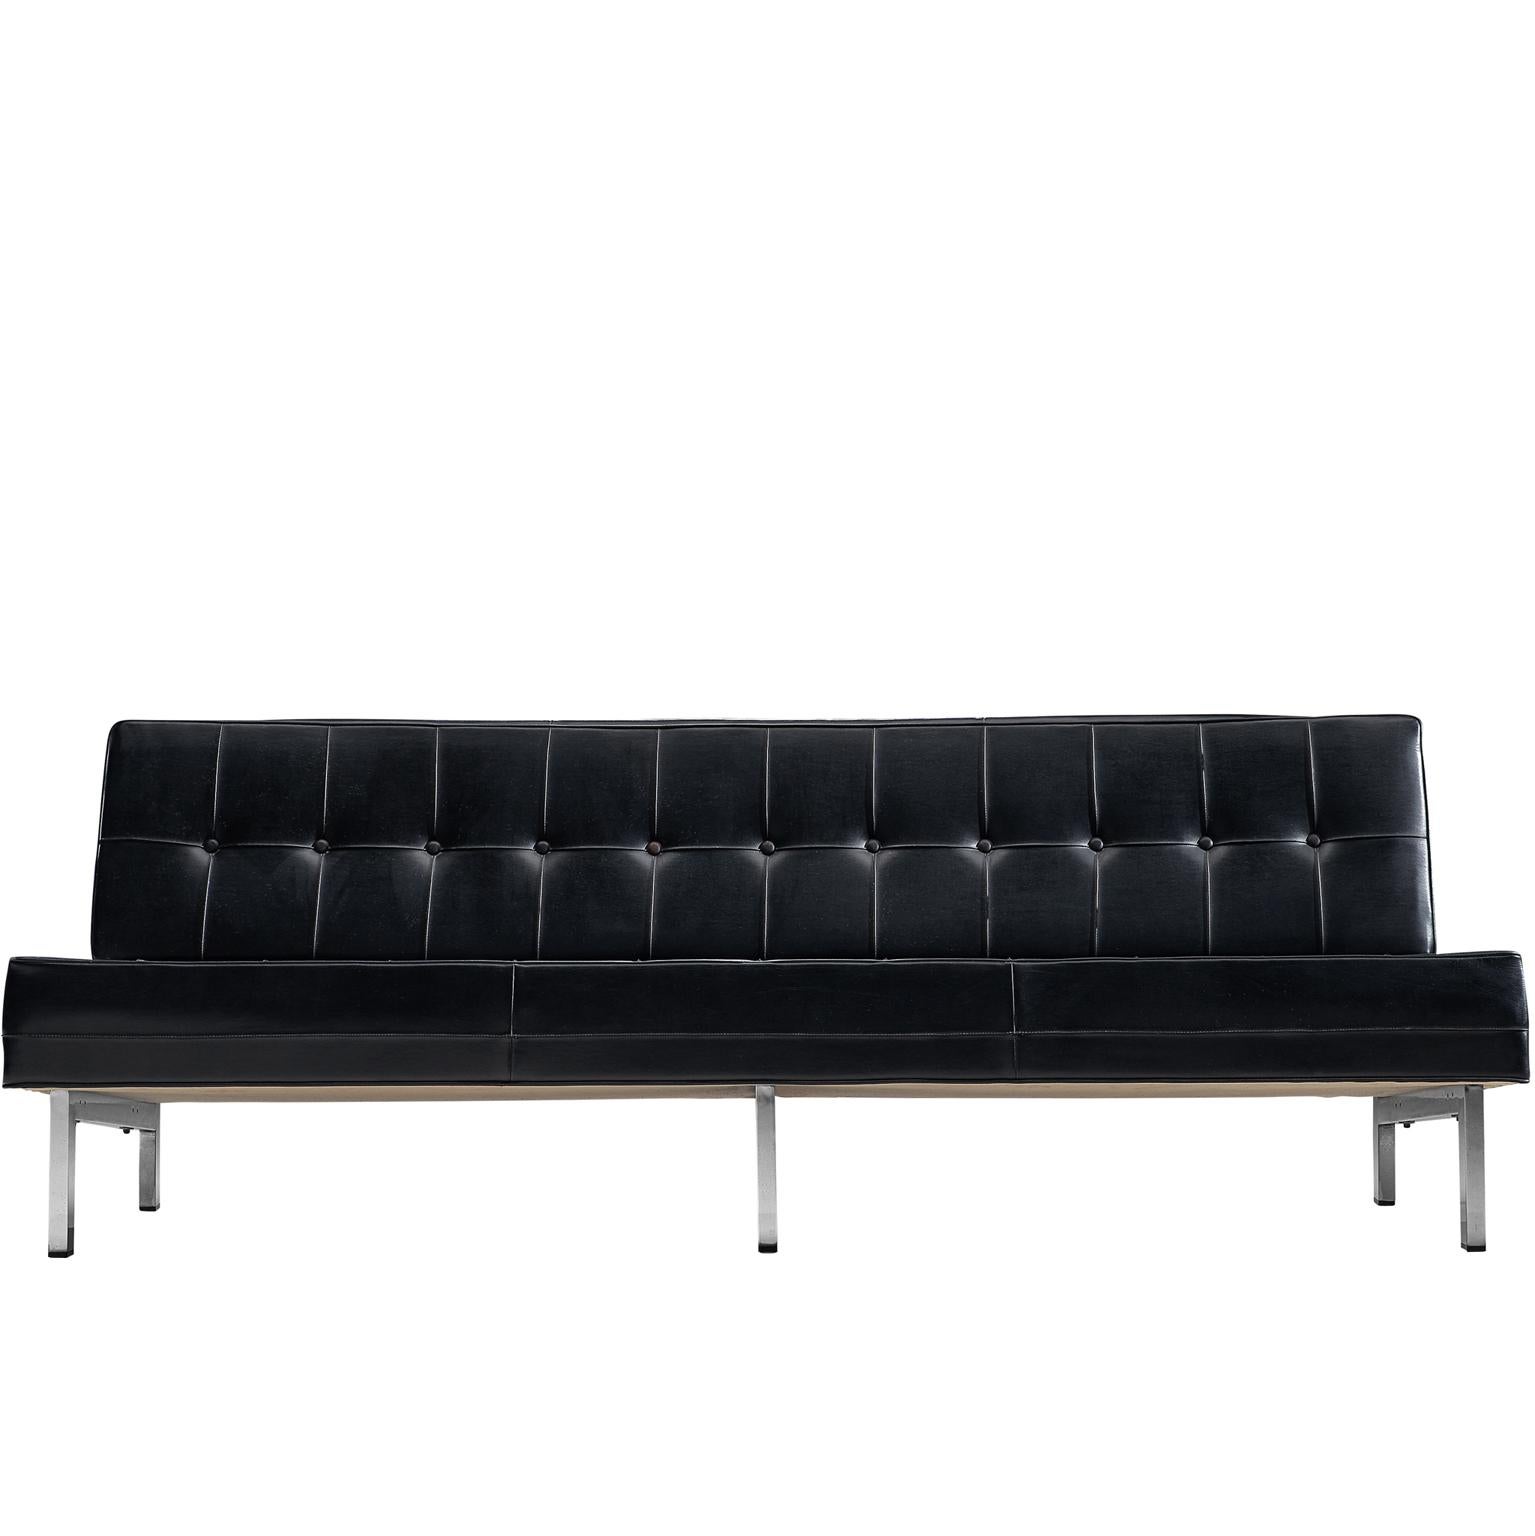 Ico Parisi Black Leather Sofa, 1960s